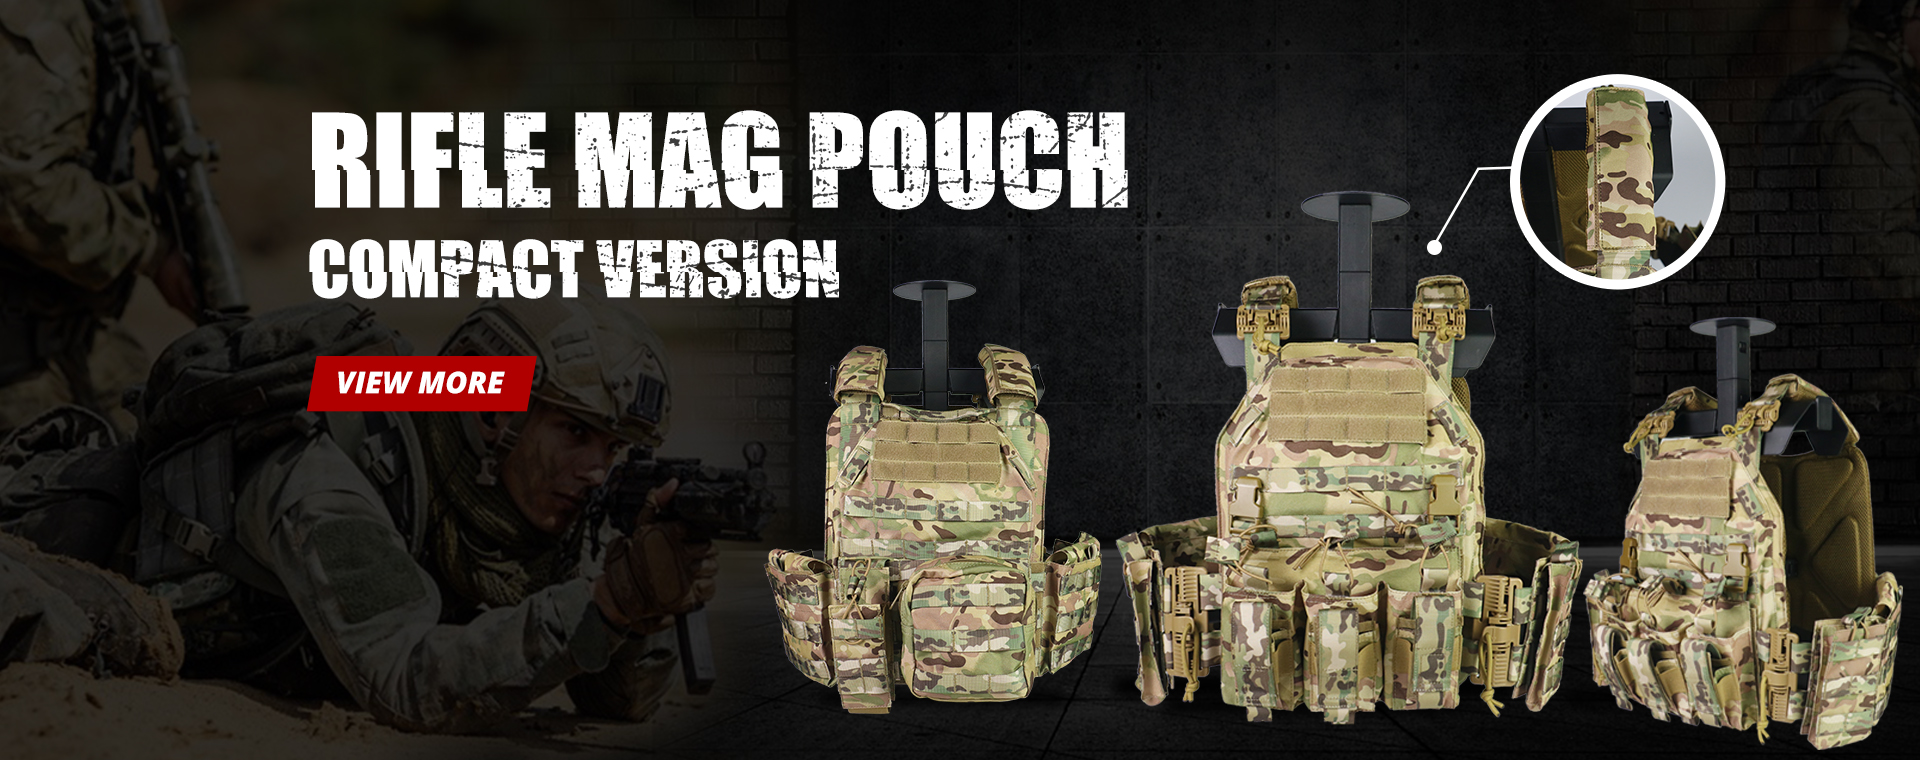 tactical vest, Bullet proof vest, tactical bag, Tactical boots, Tactical belt